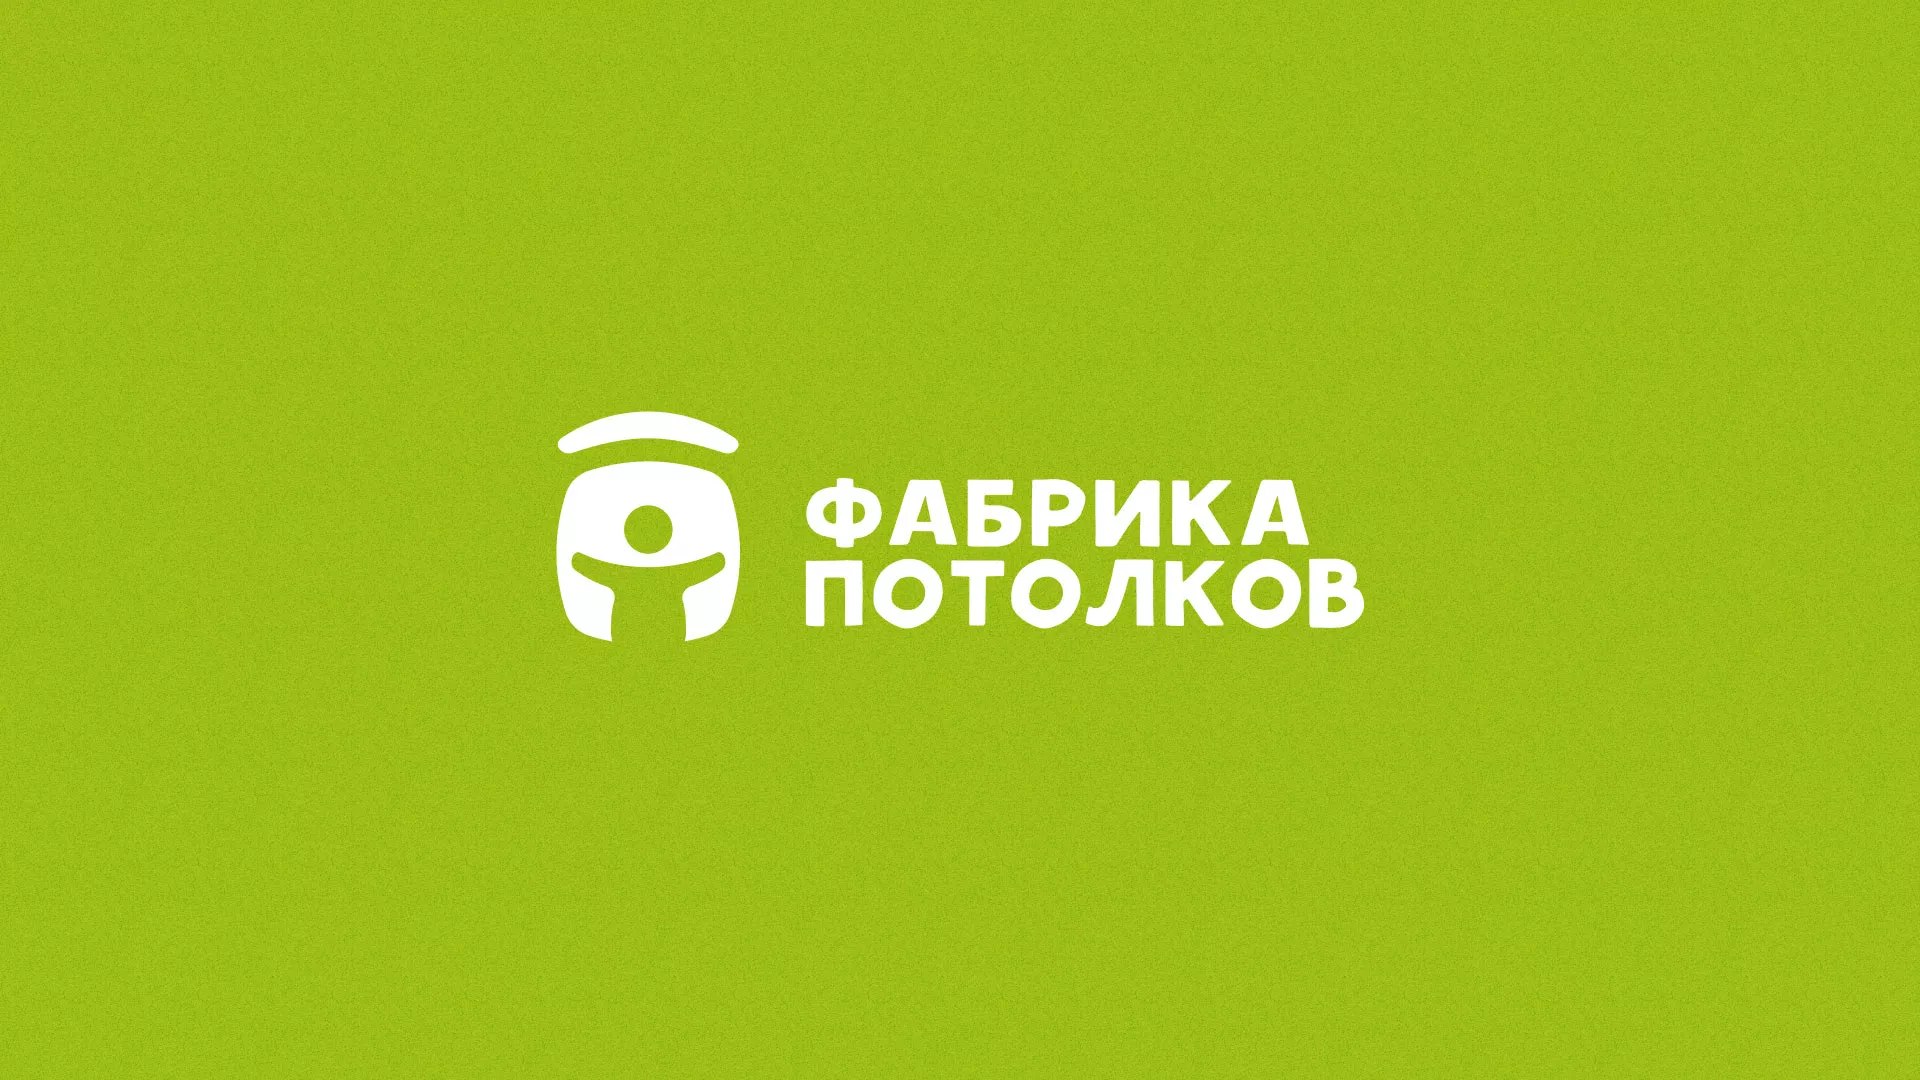 Разработка логотипа для производства натяжных потолков в Усинске